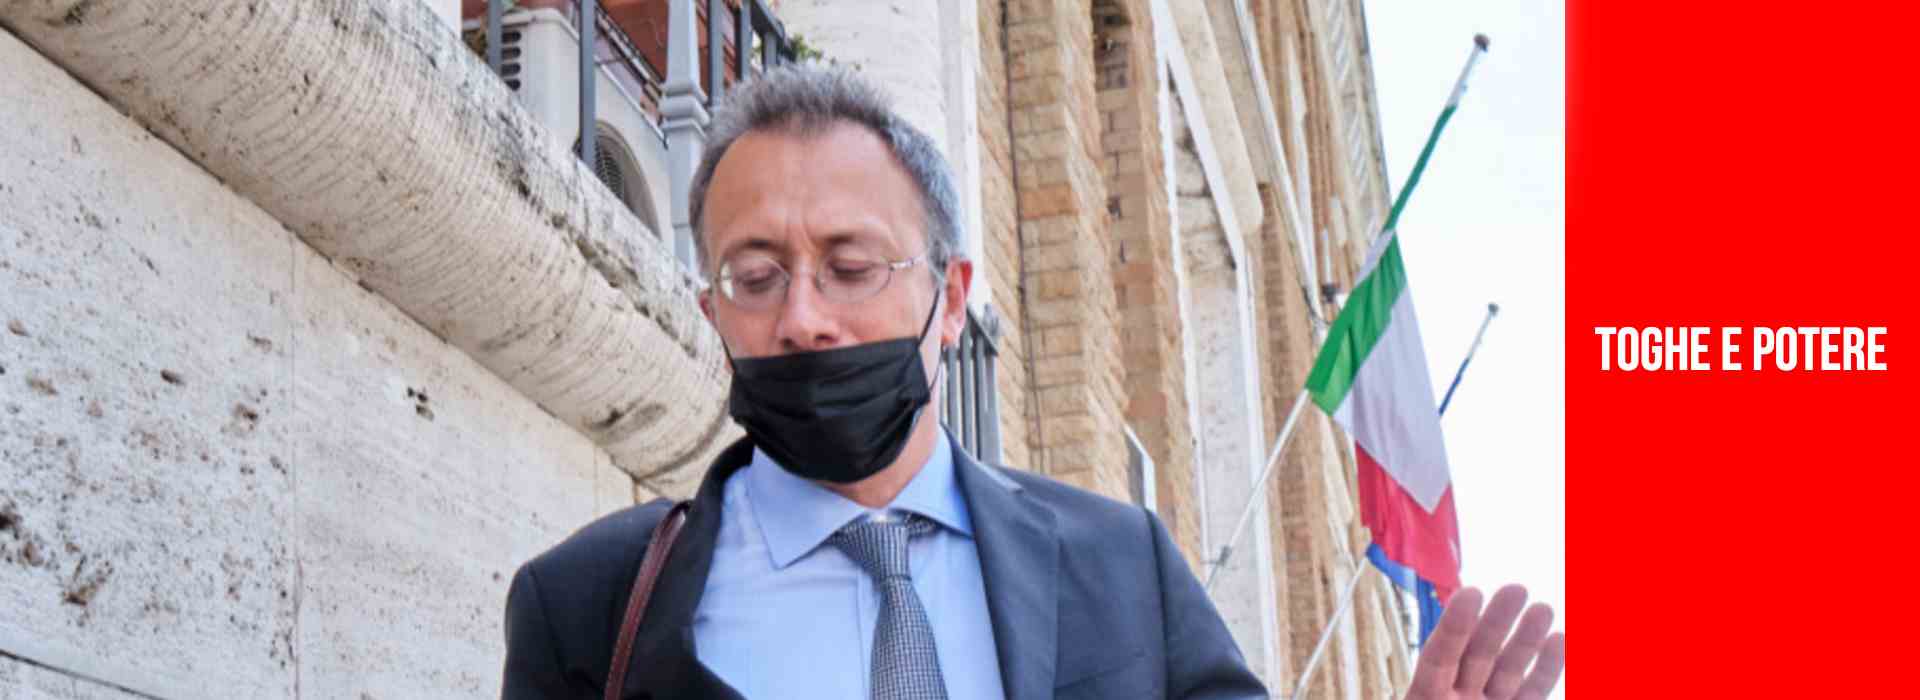 Csm, l'inchiesta che coinvolge il pm Storari sarà trasferito alla Procura di Brescia